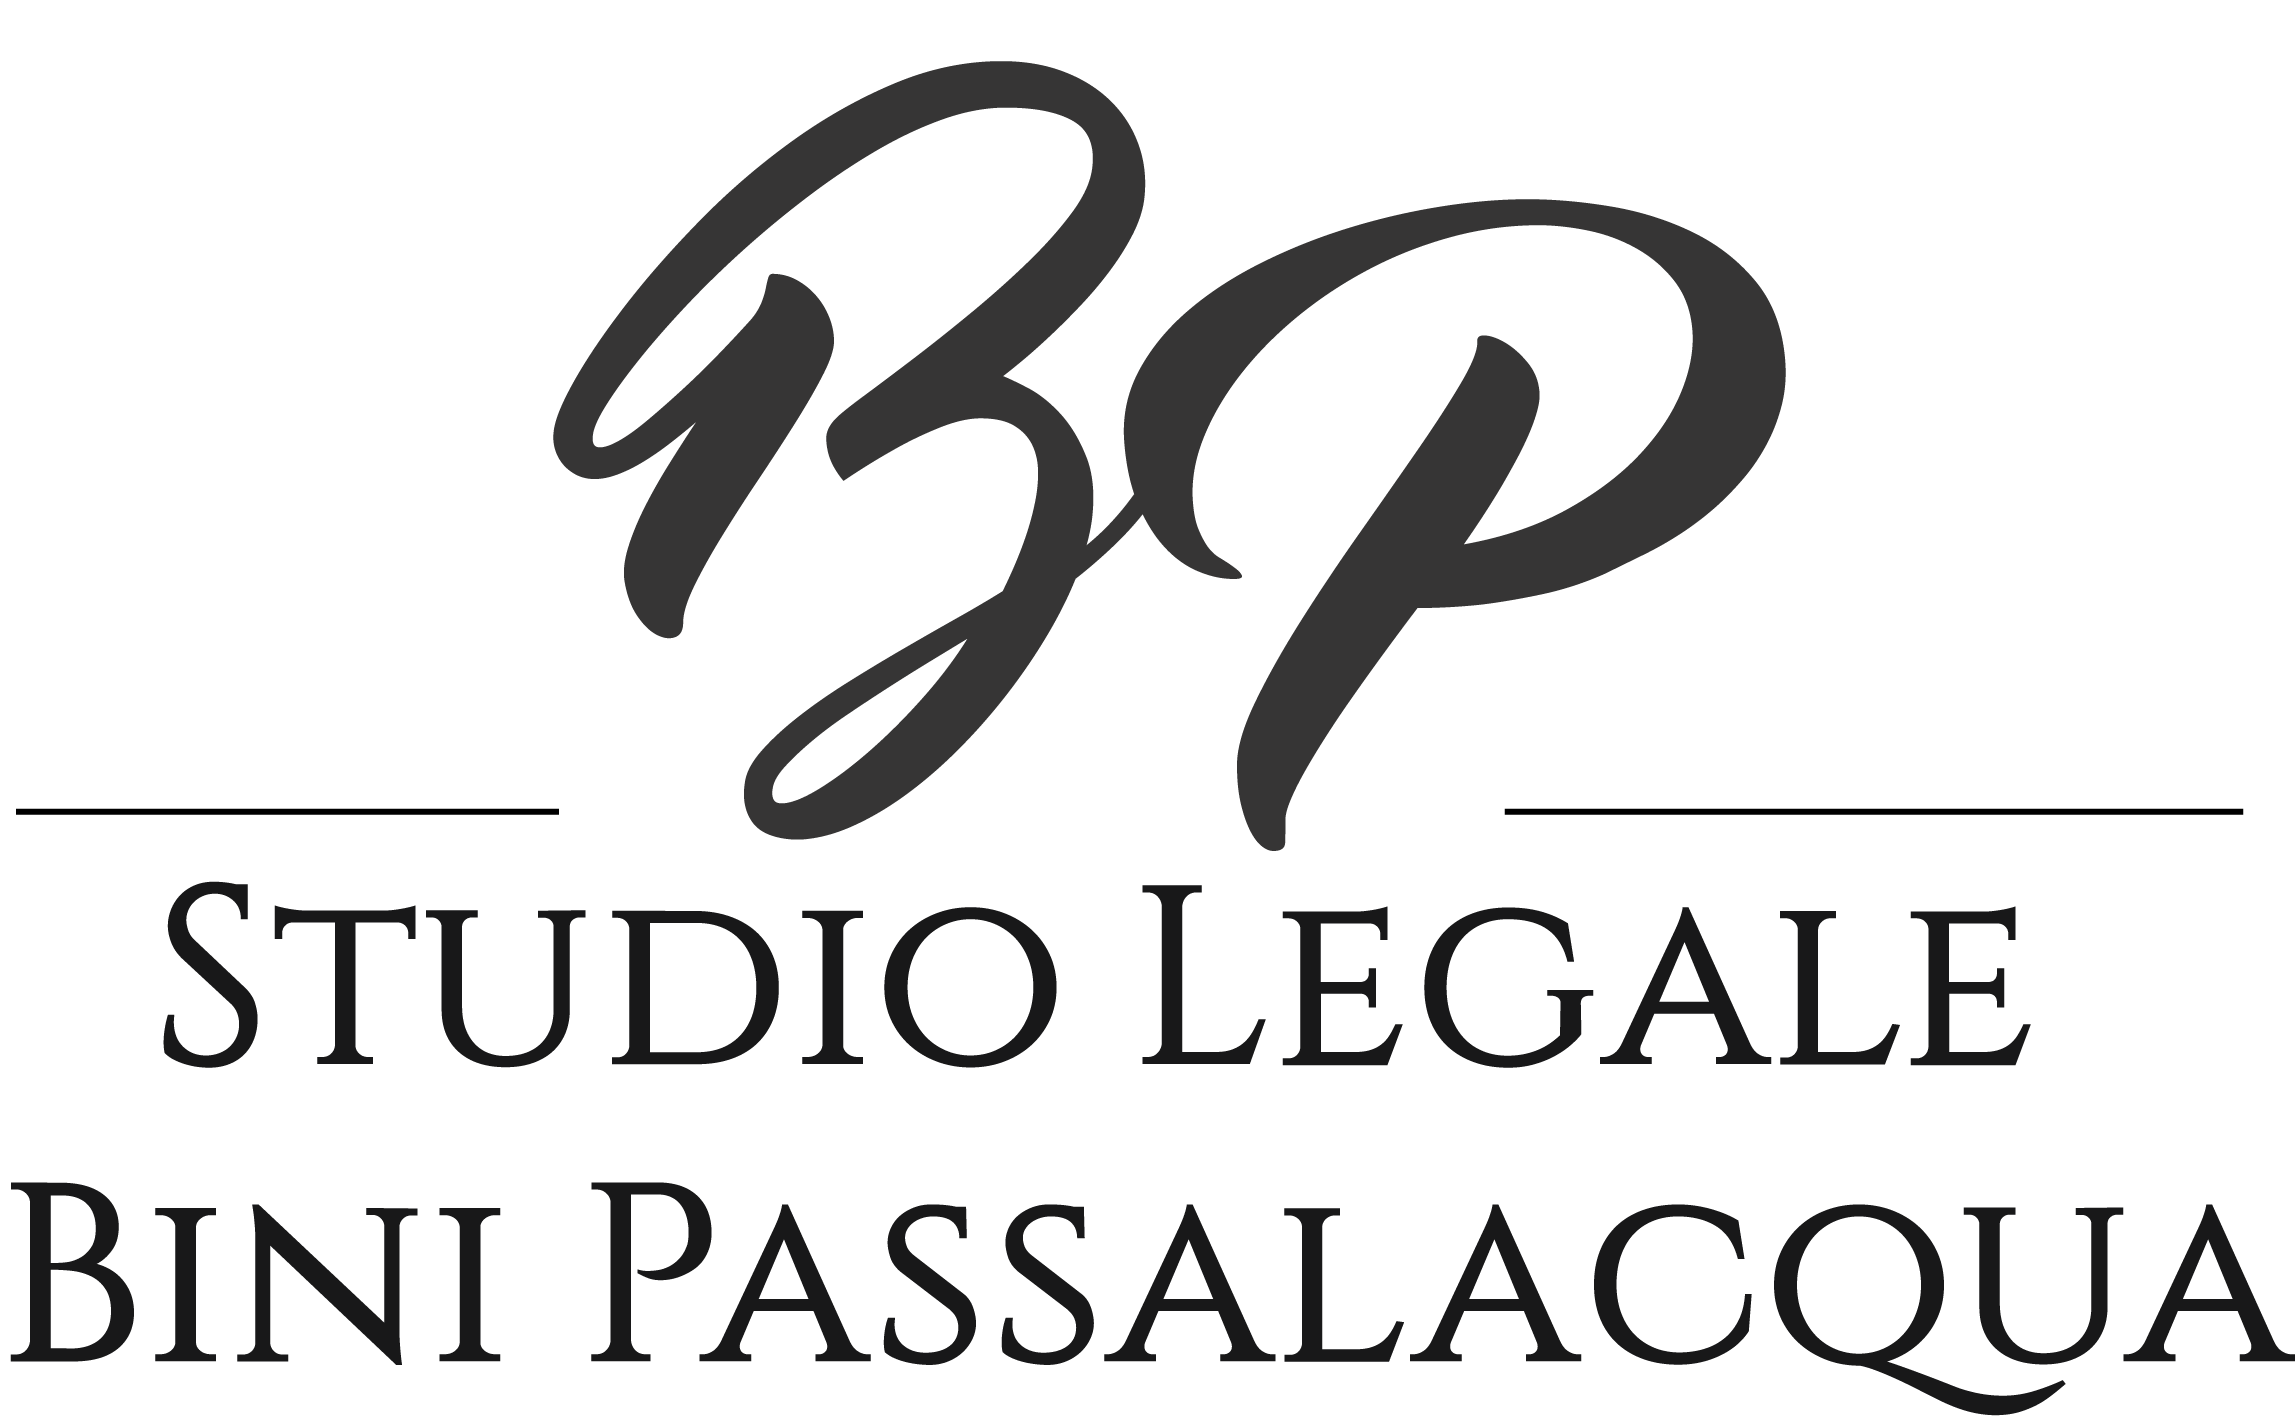 Studio legale Bini-Passalacqua